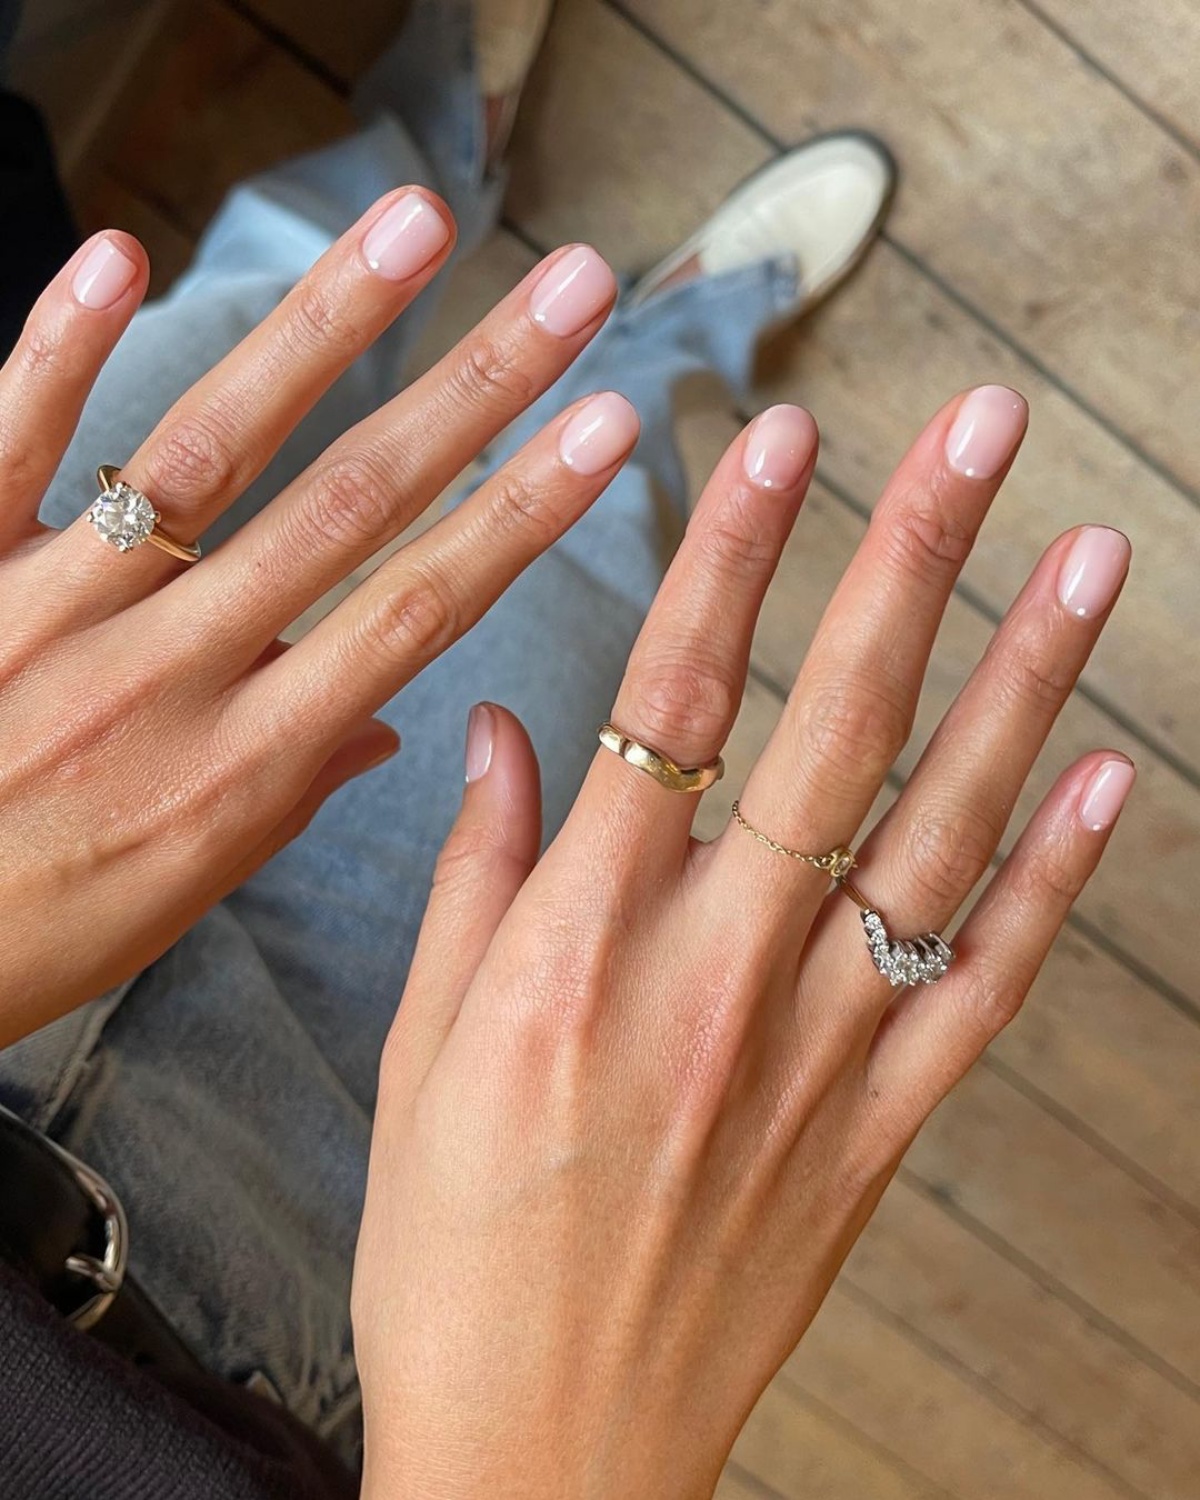 mani donna unghie corte con punti bianchi